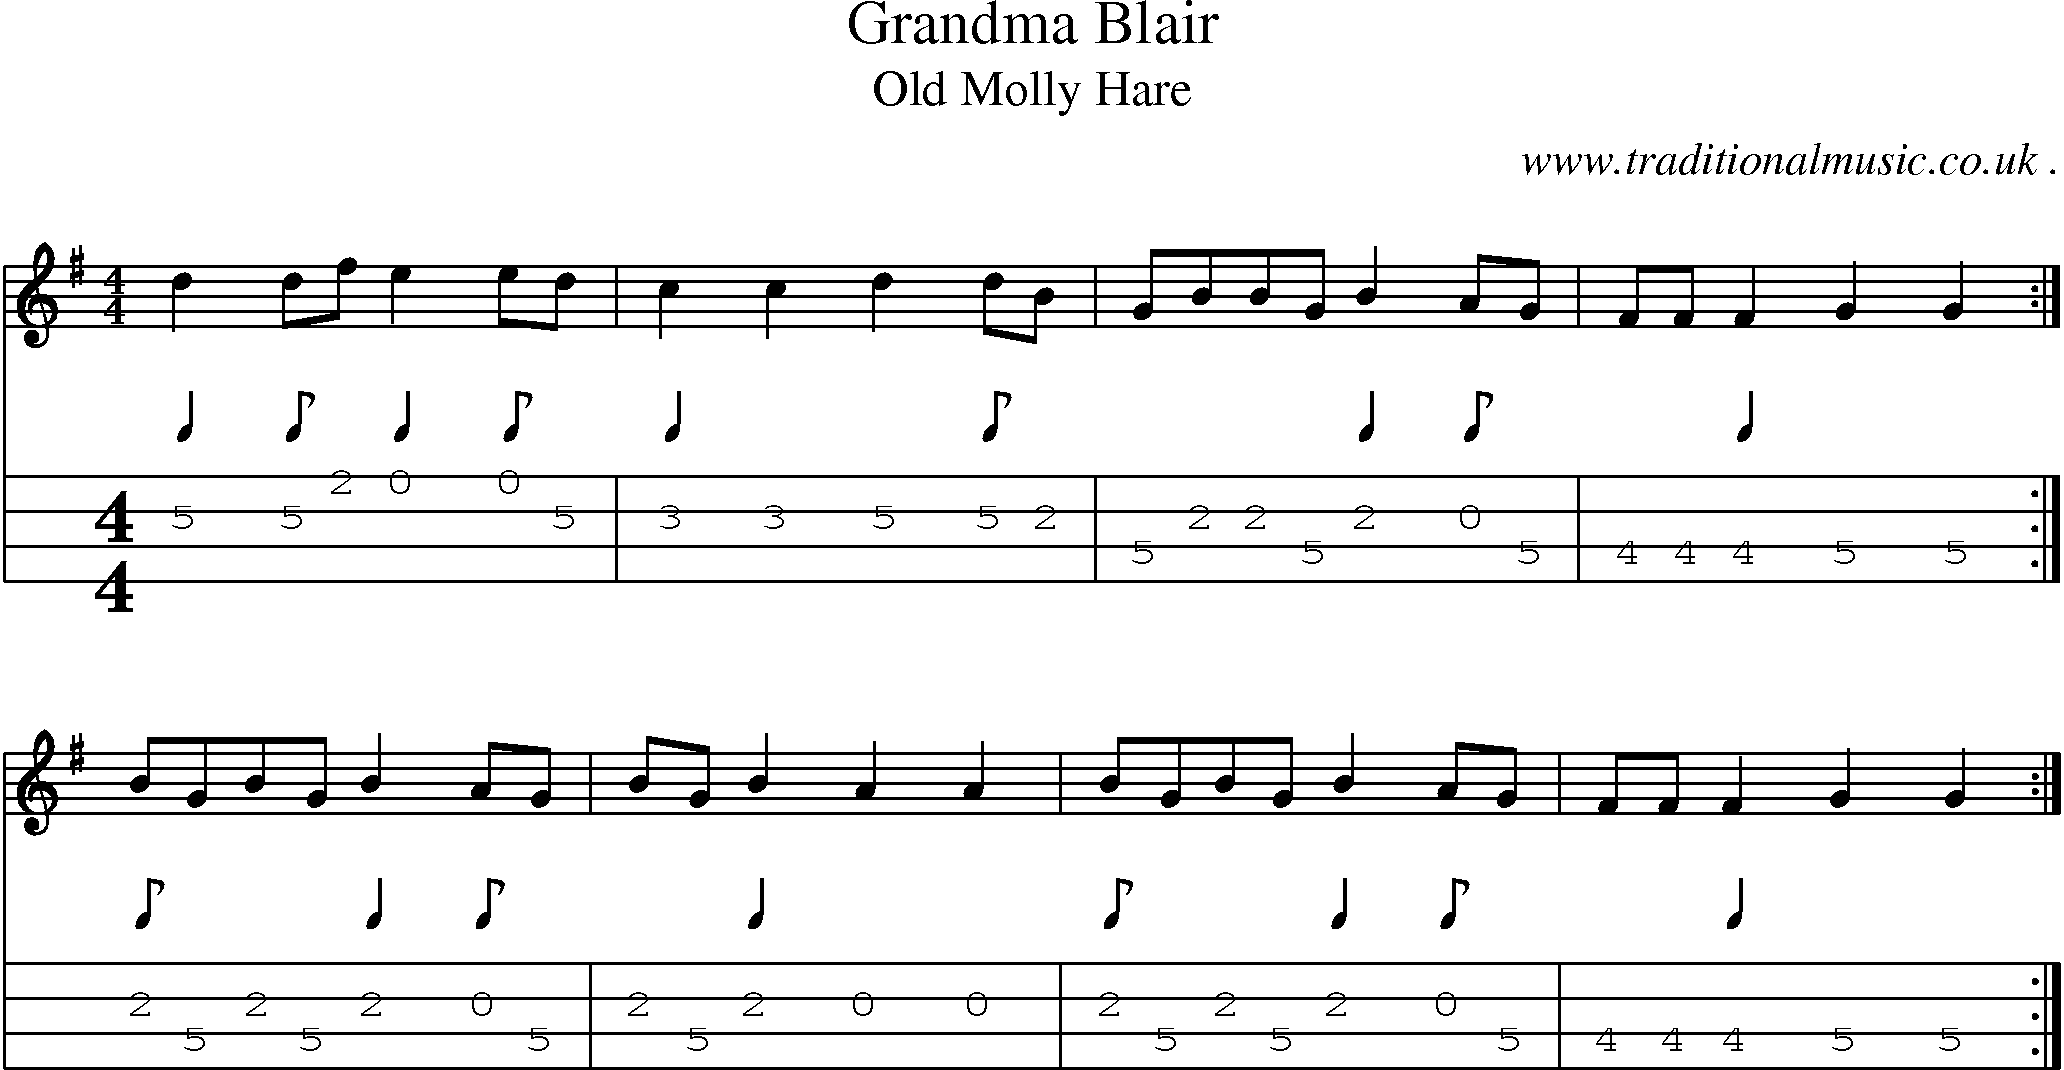 Music Score and Guitar Tabs for Grandma Blair